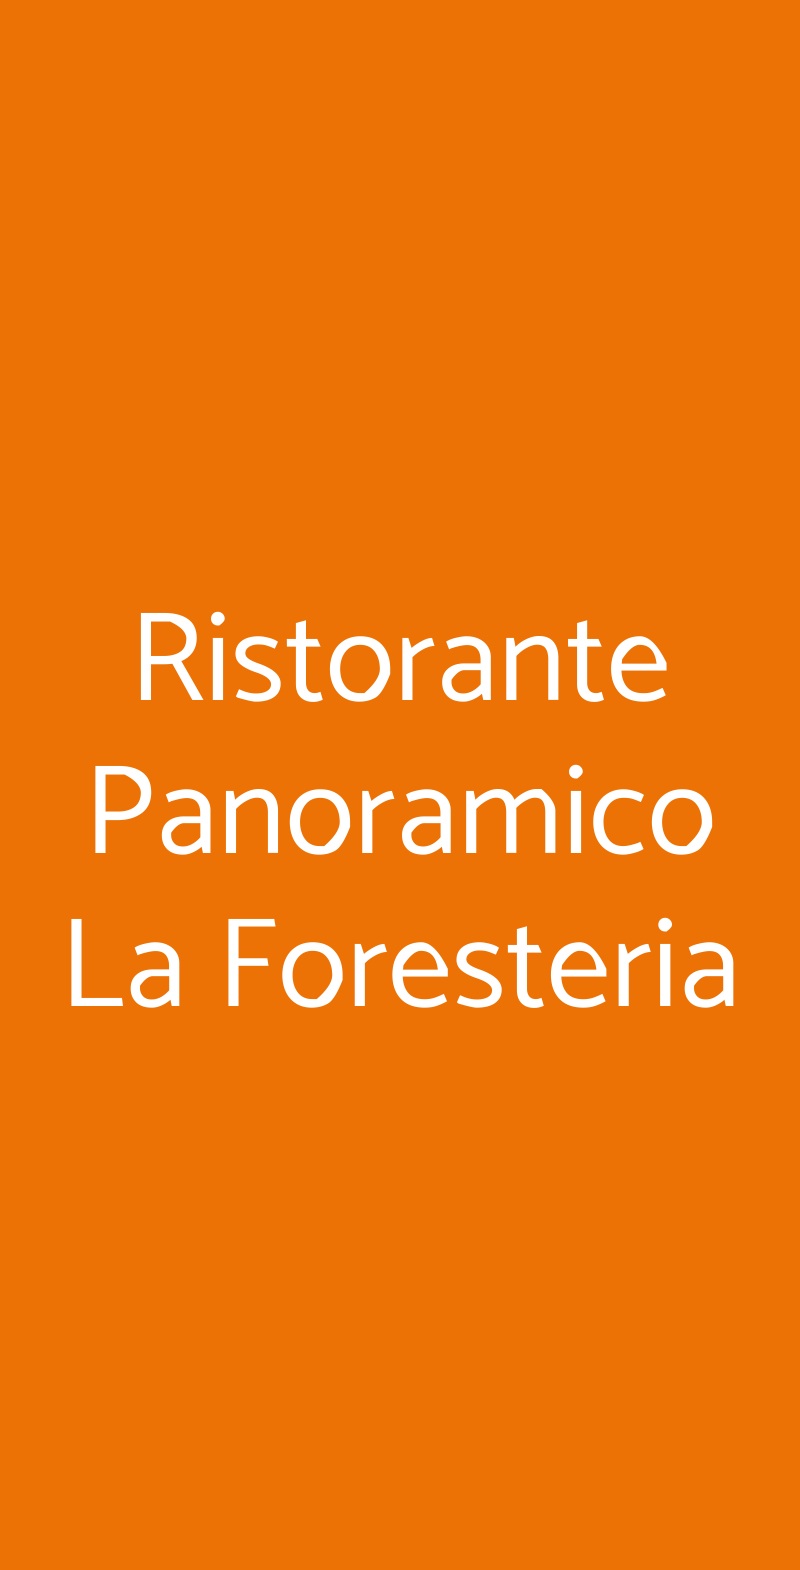 Ristorante Panoramico La Foresteria Monsummano Terme menù 1 pagina